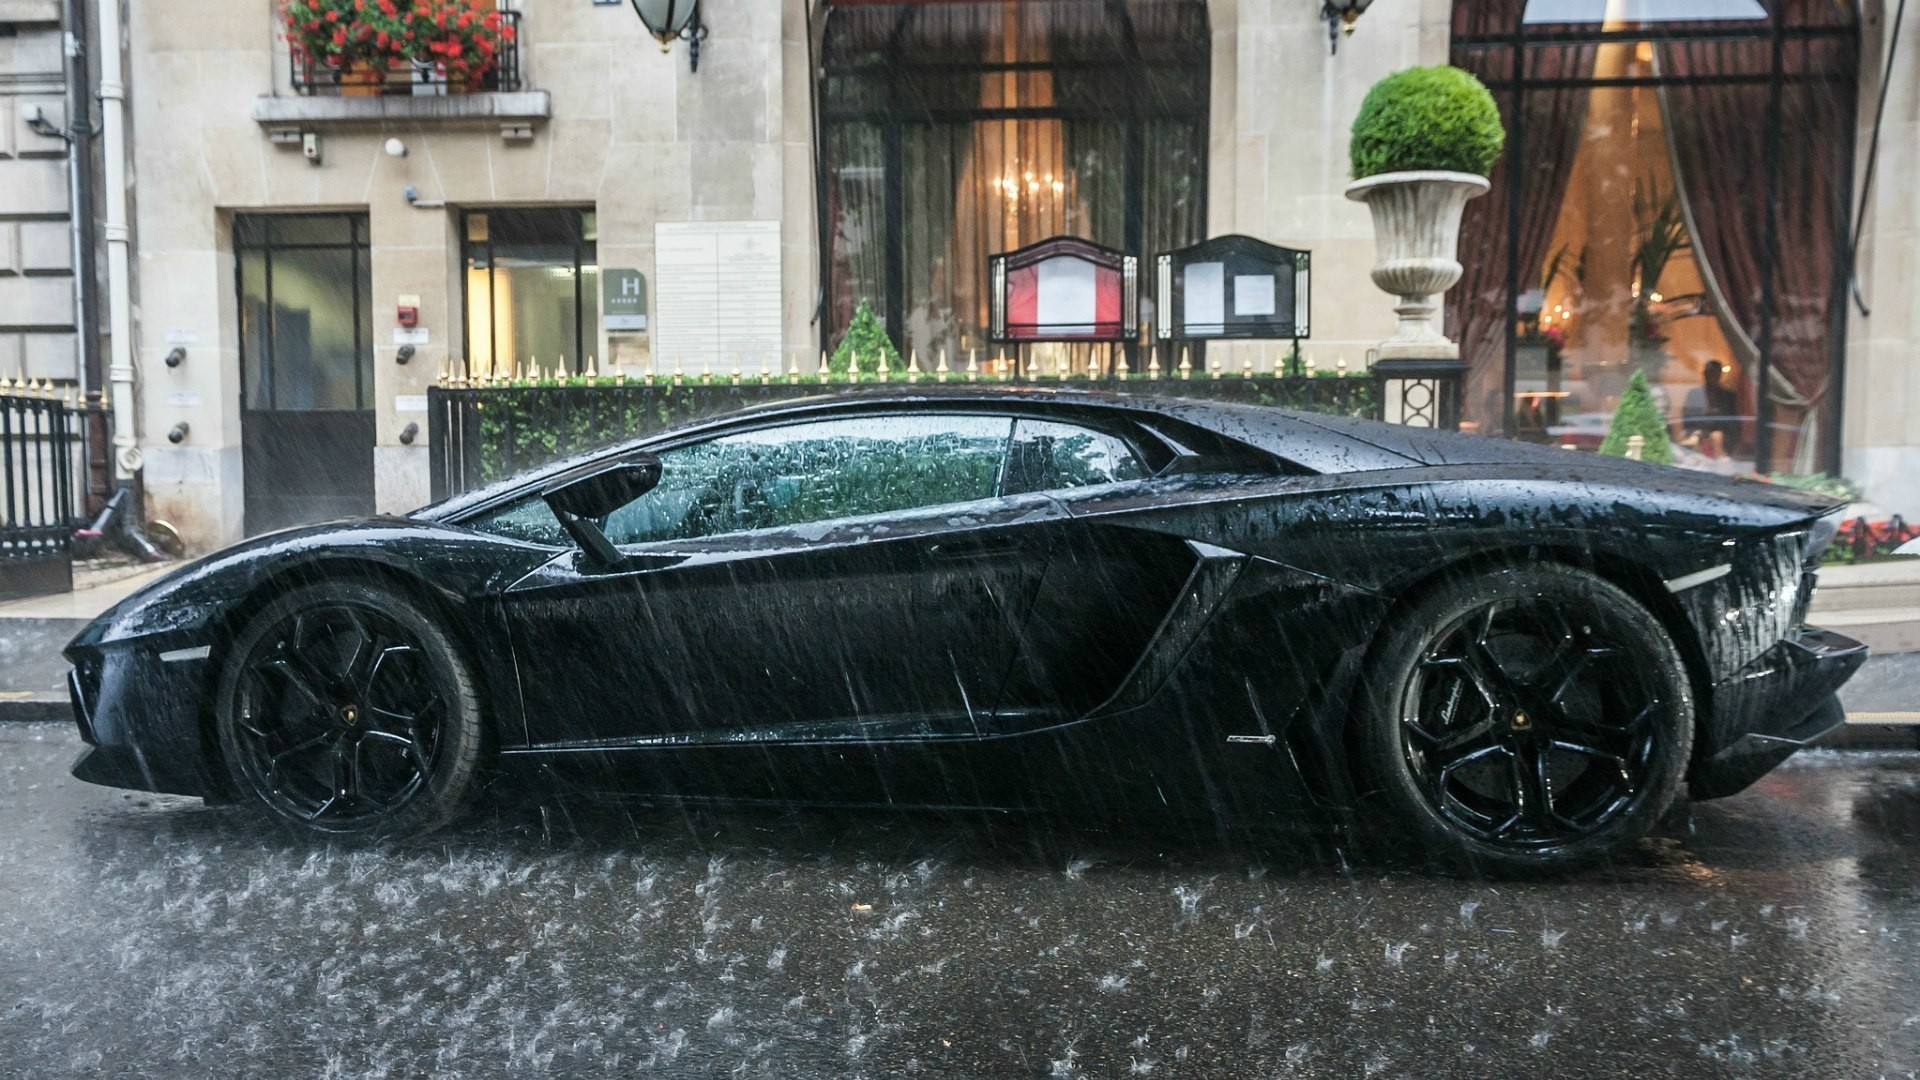 General 1920x1080 car Lamborghini Lamborghini Aventador vehicle urban rain italian cars Volkswagen Group